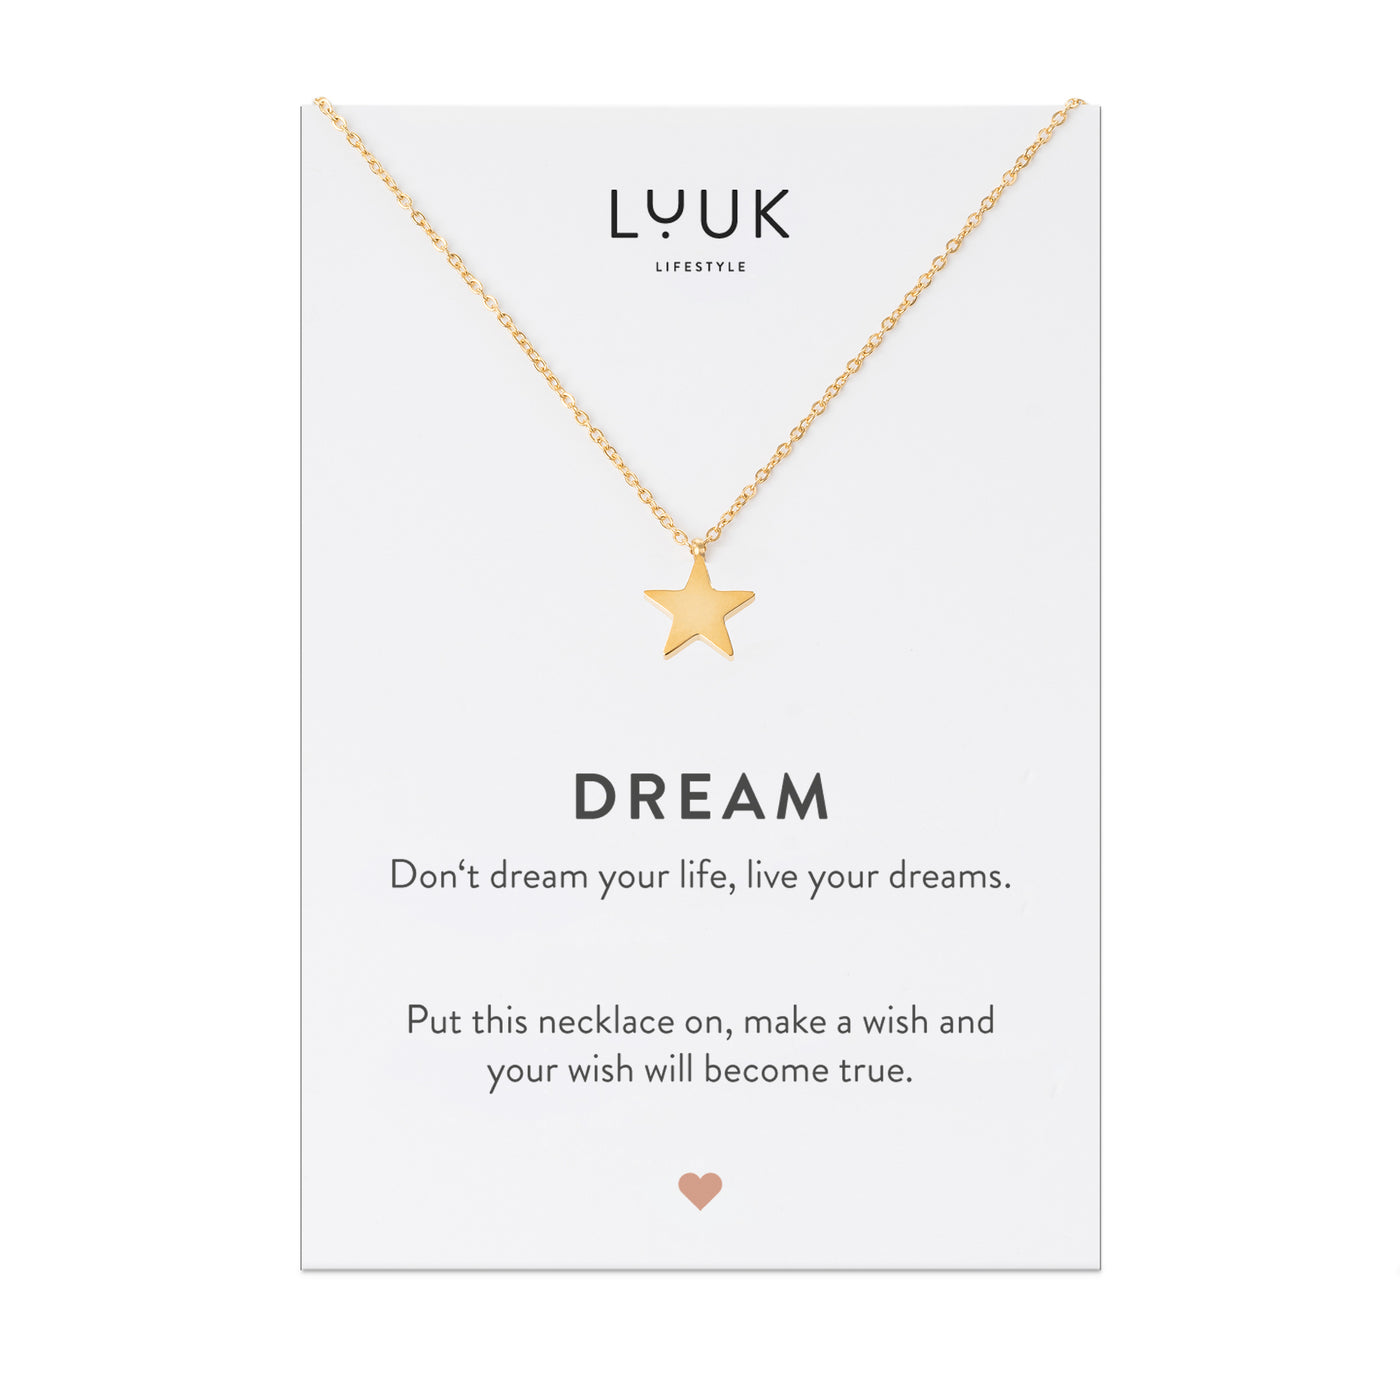 Goldene Halskette mit Stern Anhänger auf Dream Spruchkarte von der Brand Luuk Lifestyle 